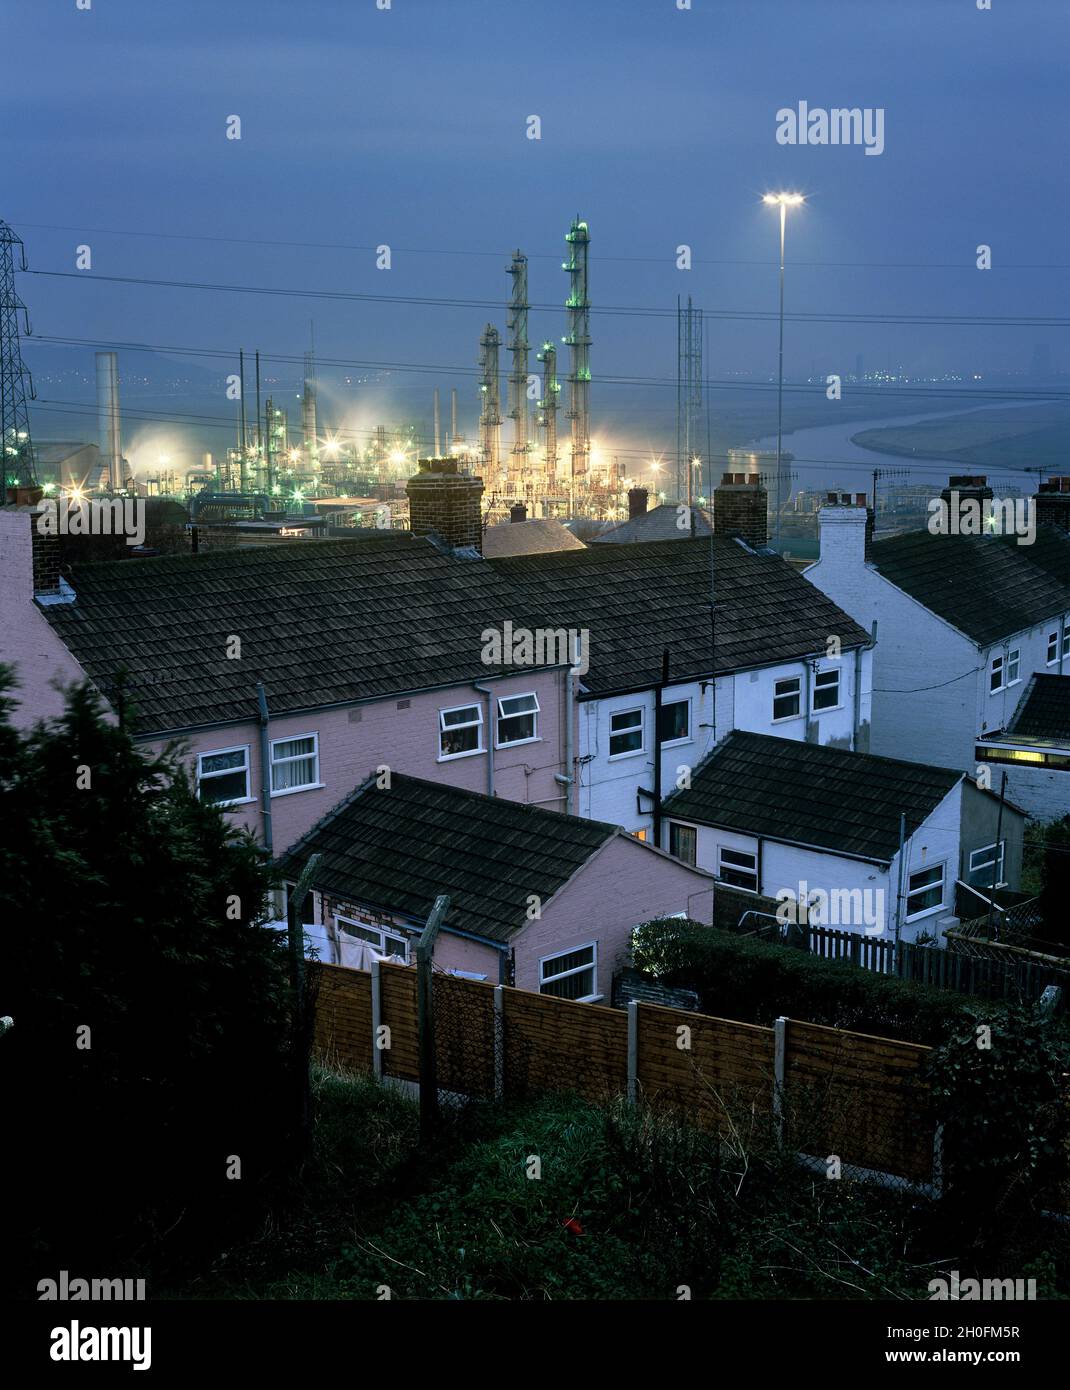 Gehäuse neben Lösungsmittelreaktortürmen im ehemaligen ICI-Chemiewerk Runcorn. Stockfoto